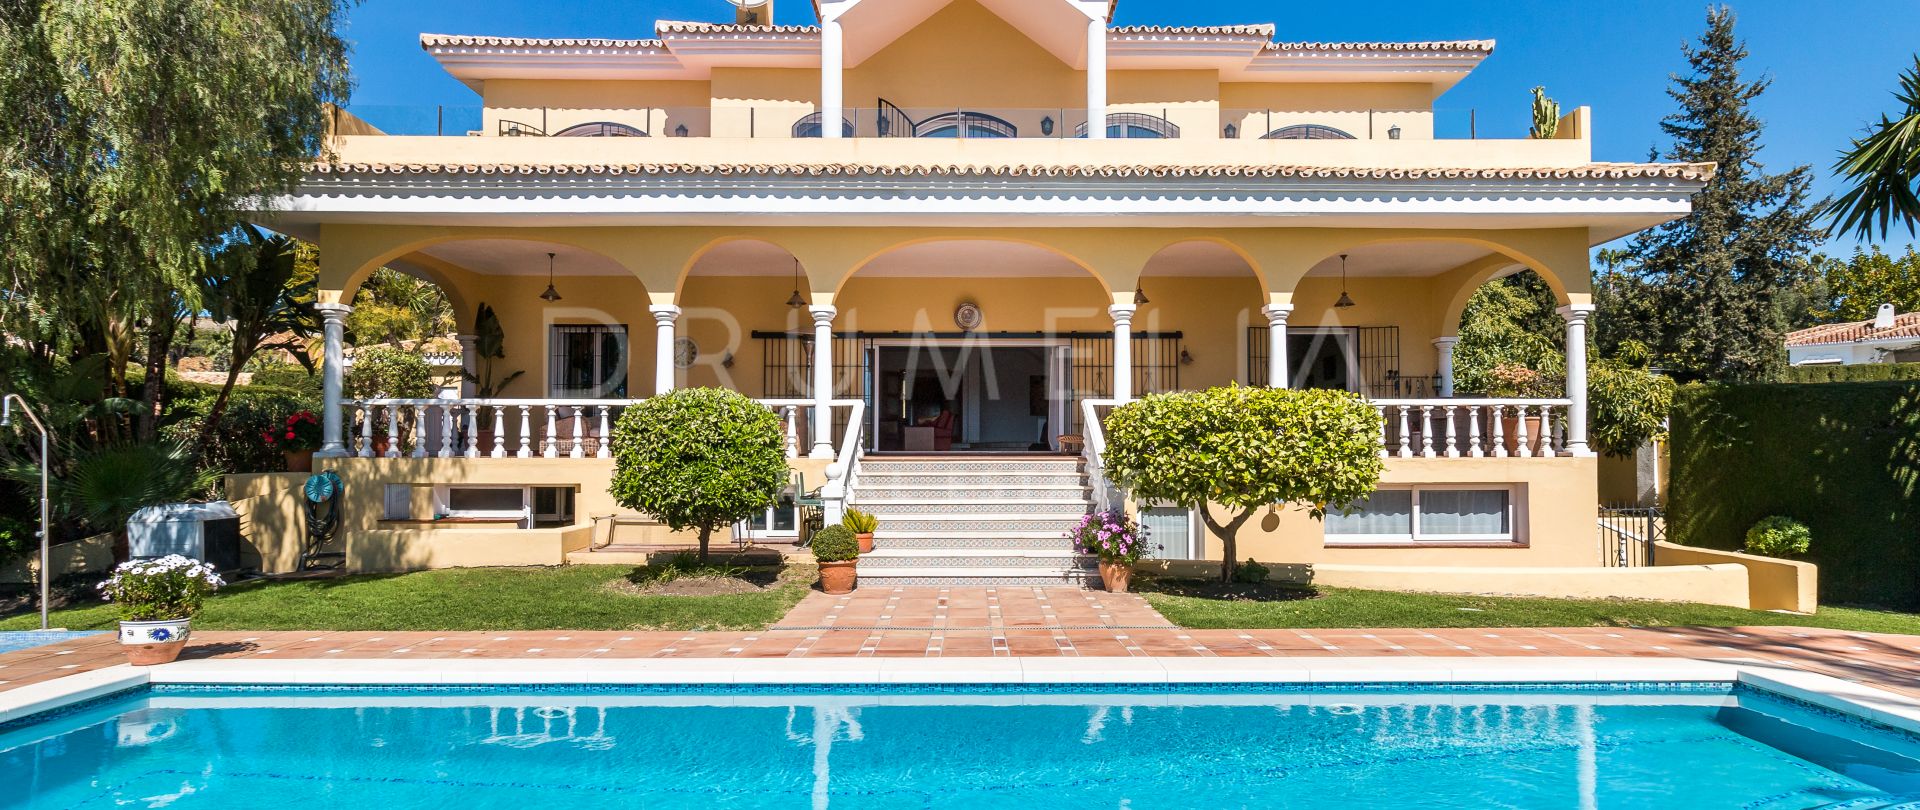 Elegant Luxury Mediterranean Villa, Paraiso Alto, Benahavis